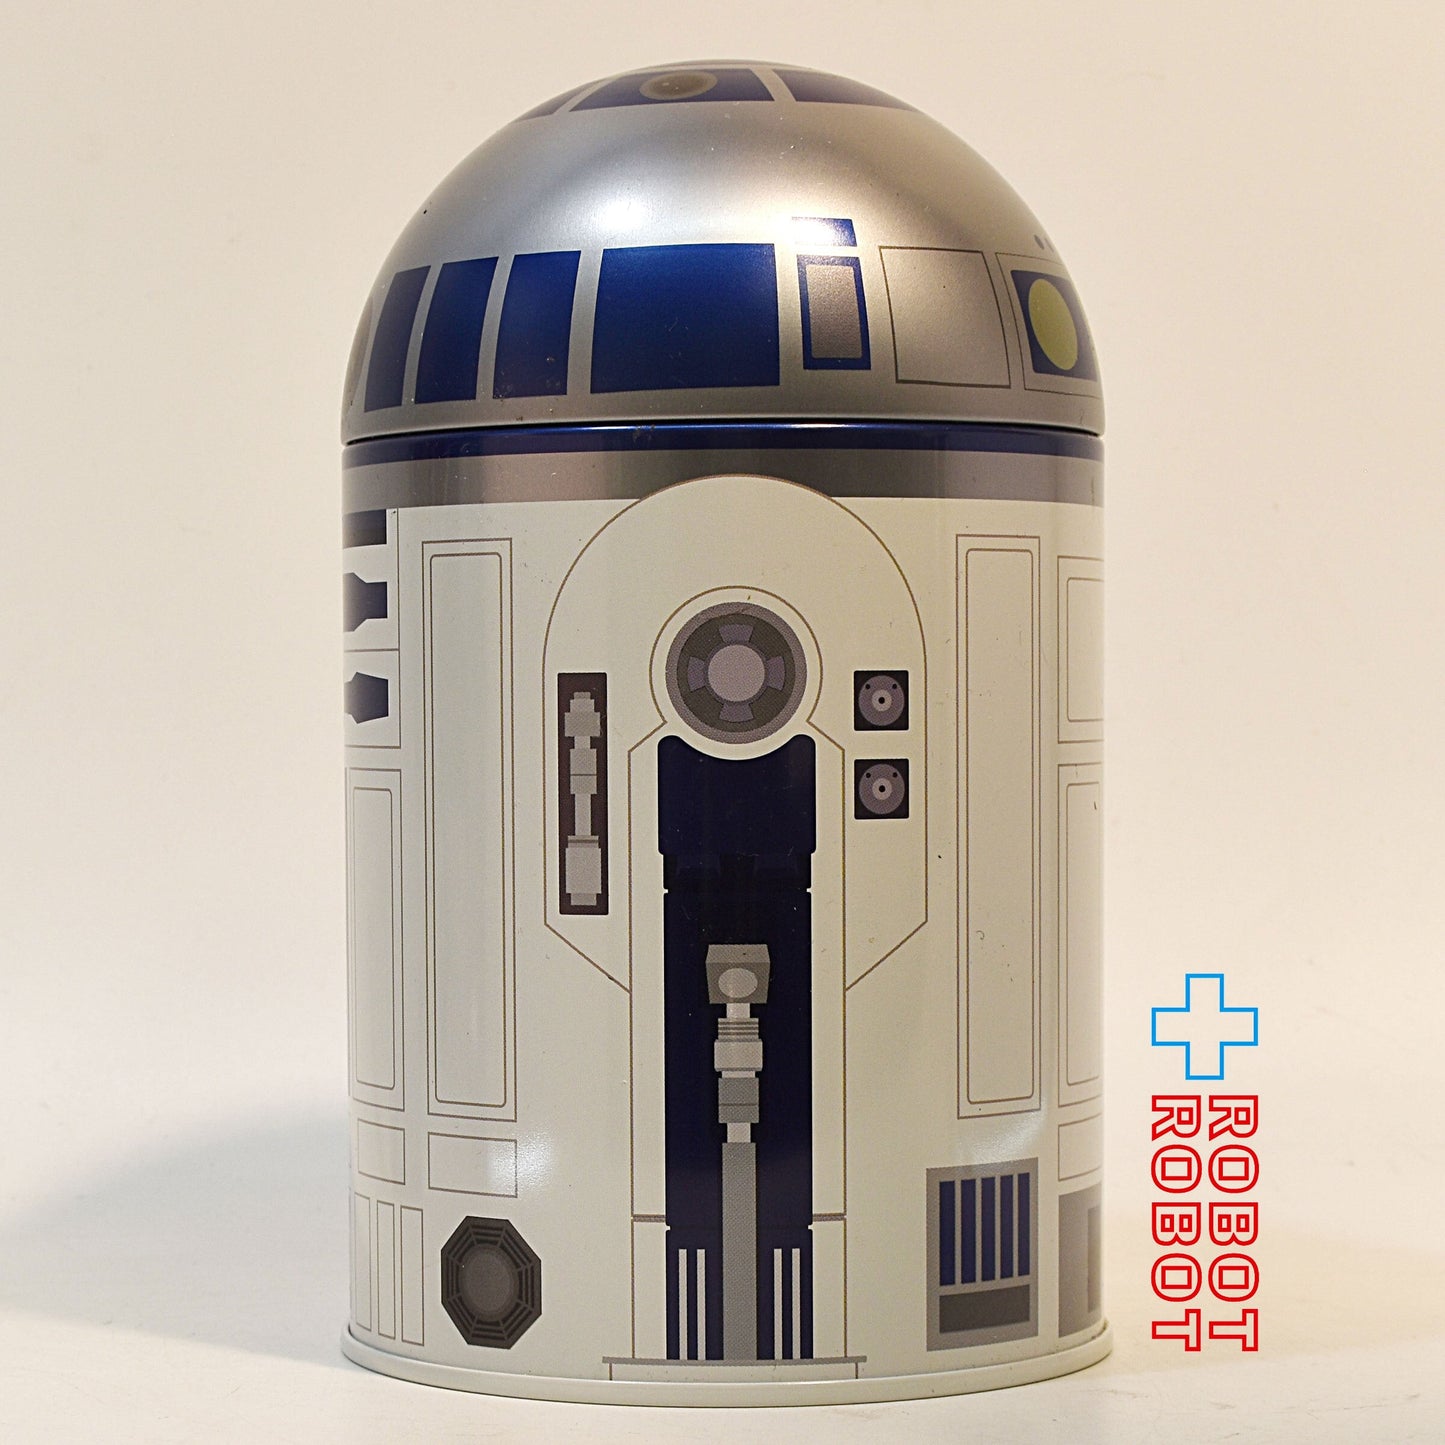 スター・ウォーズ R2-D2 お菓子缶ケース (スイートプラザ)